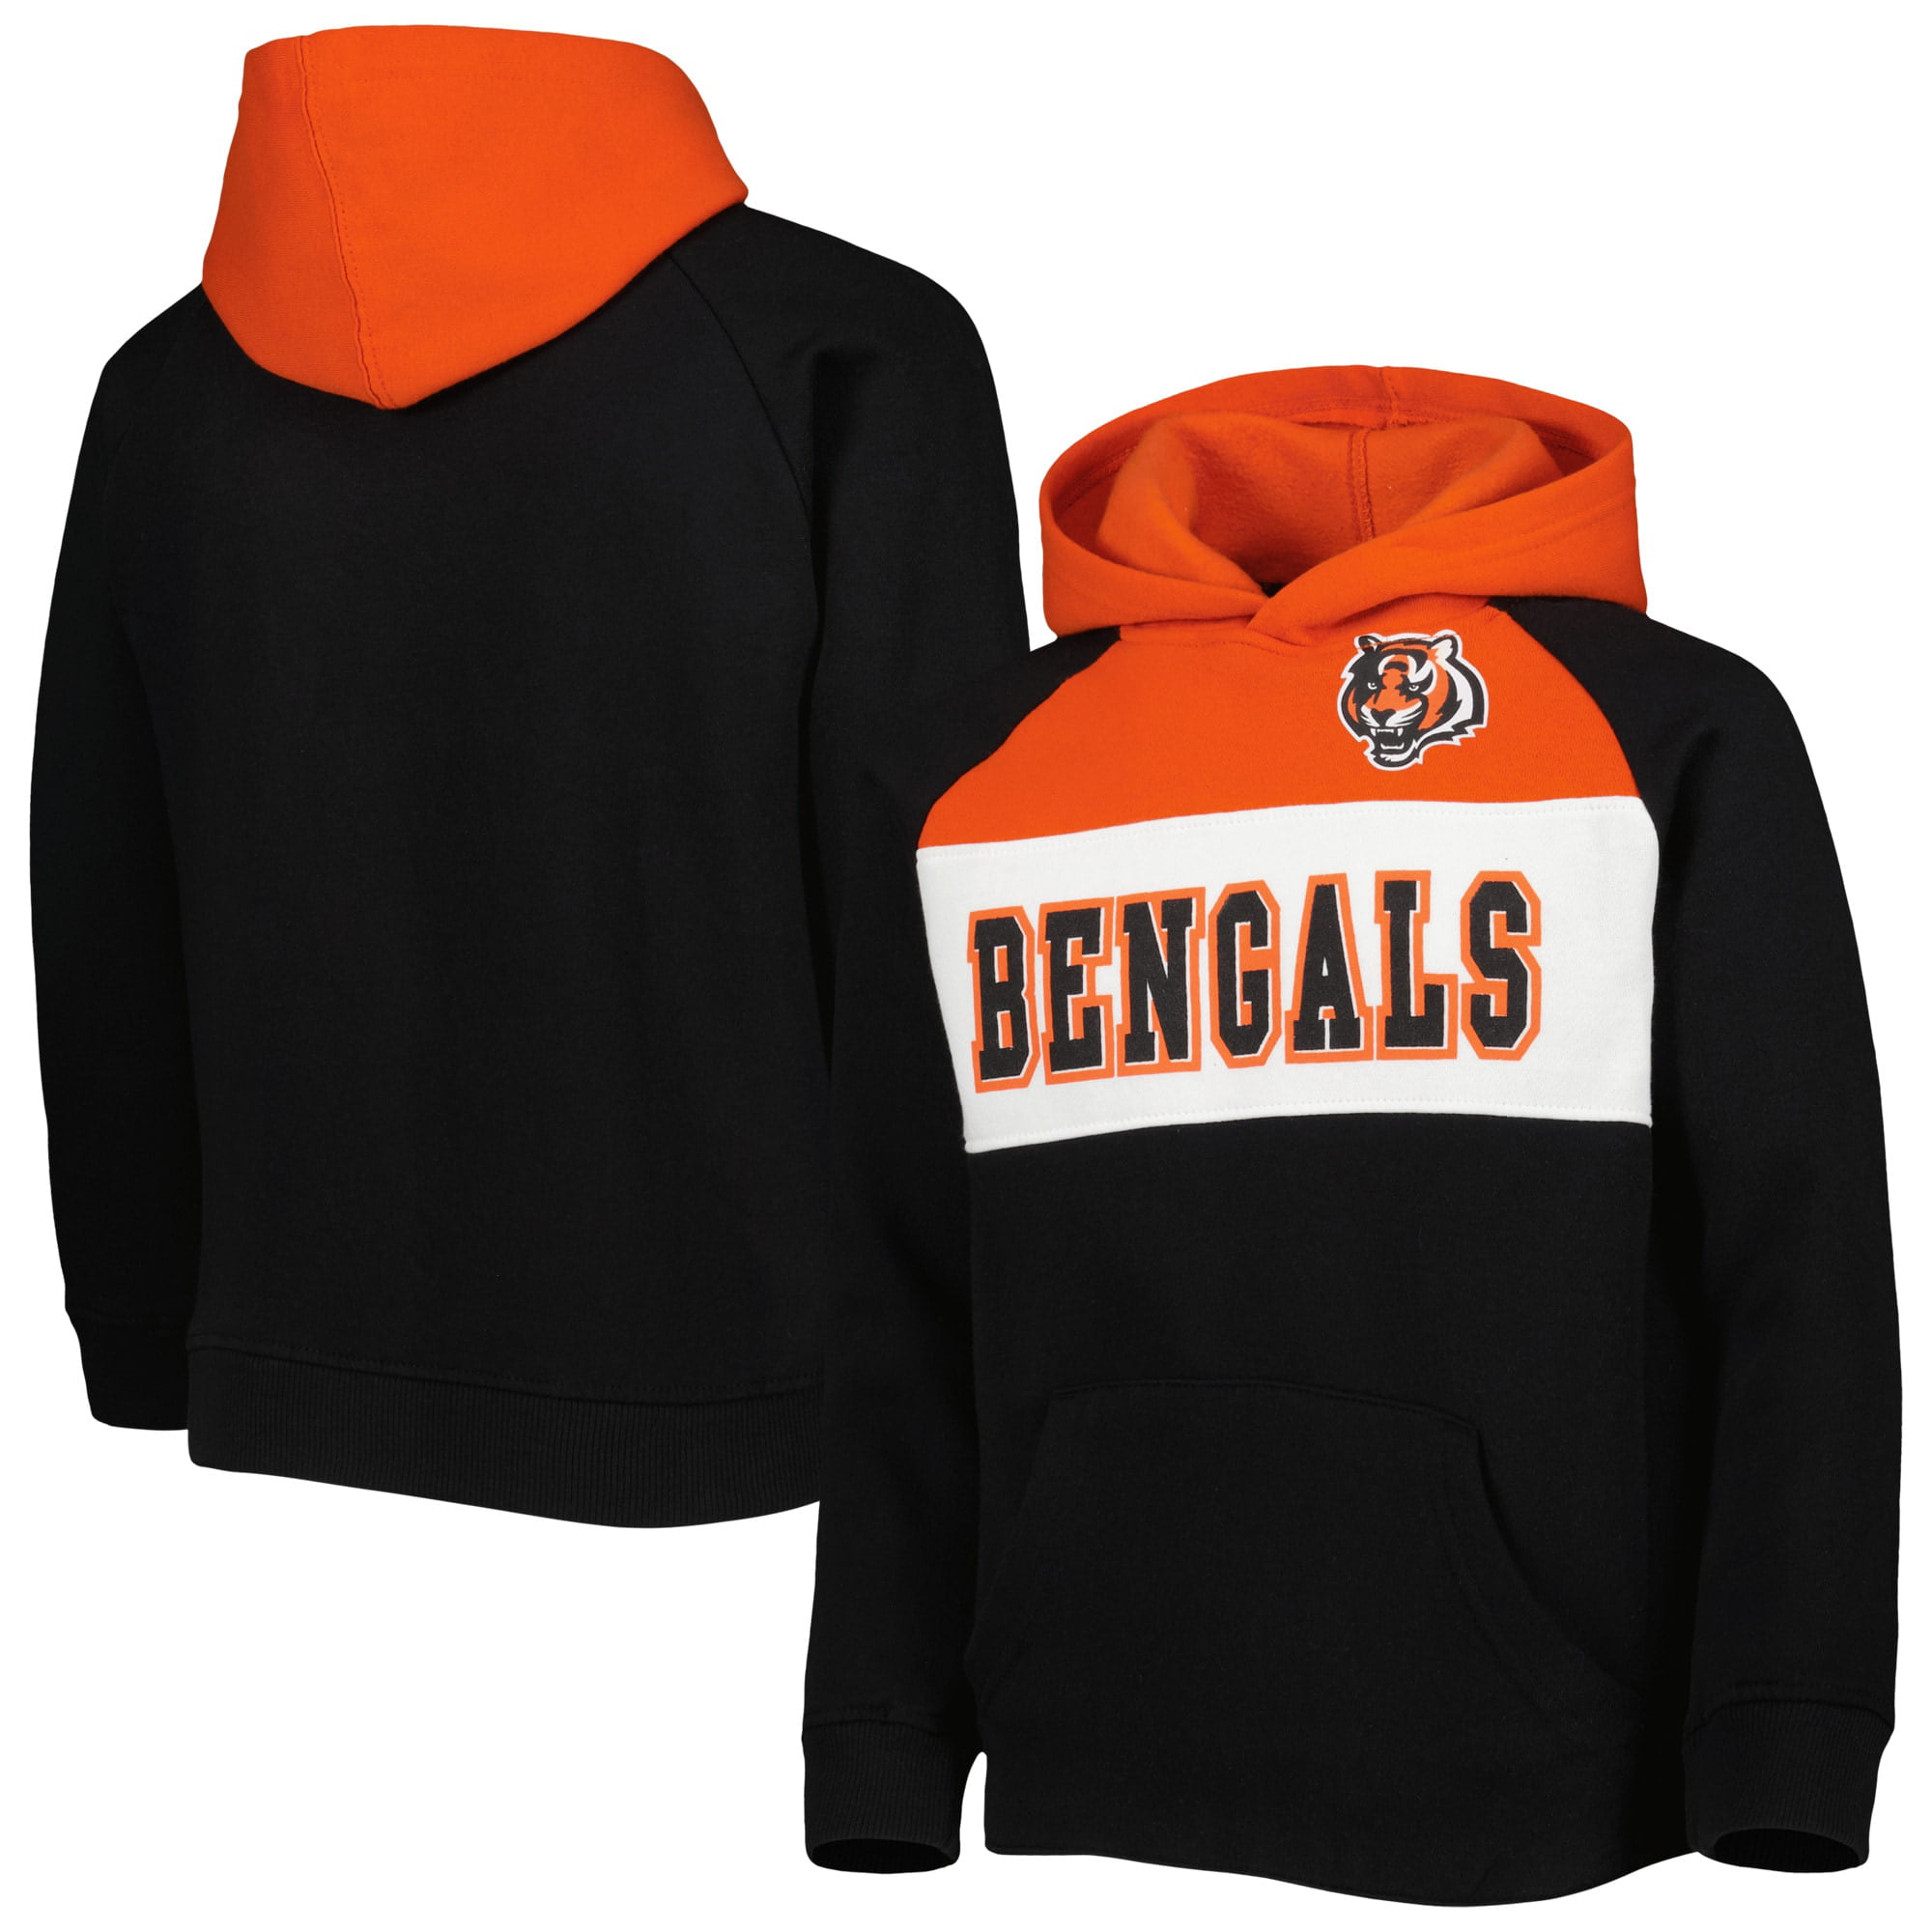 Cincinnati Bengals Sweatshirts, Bengals Hoodies, Fleece